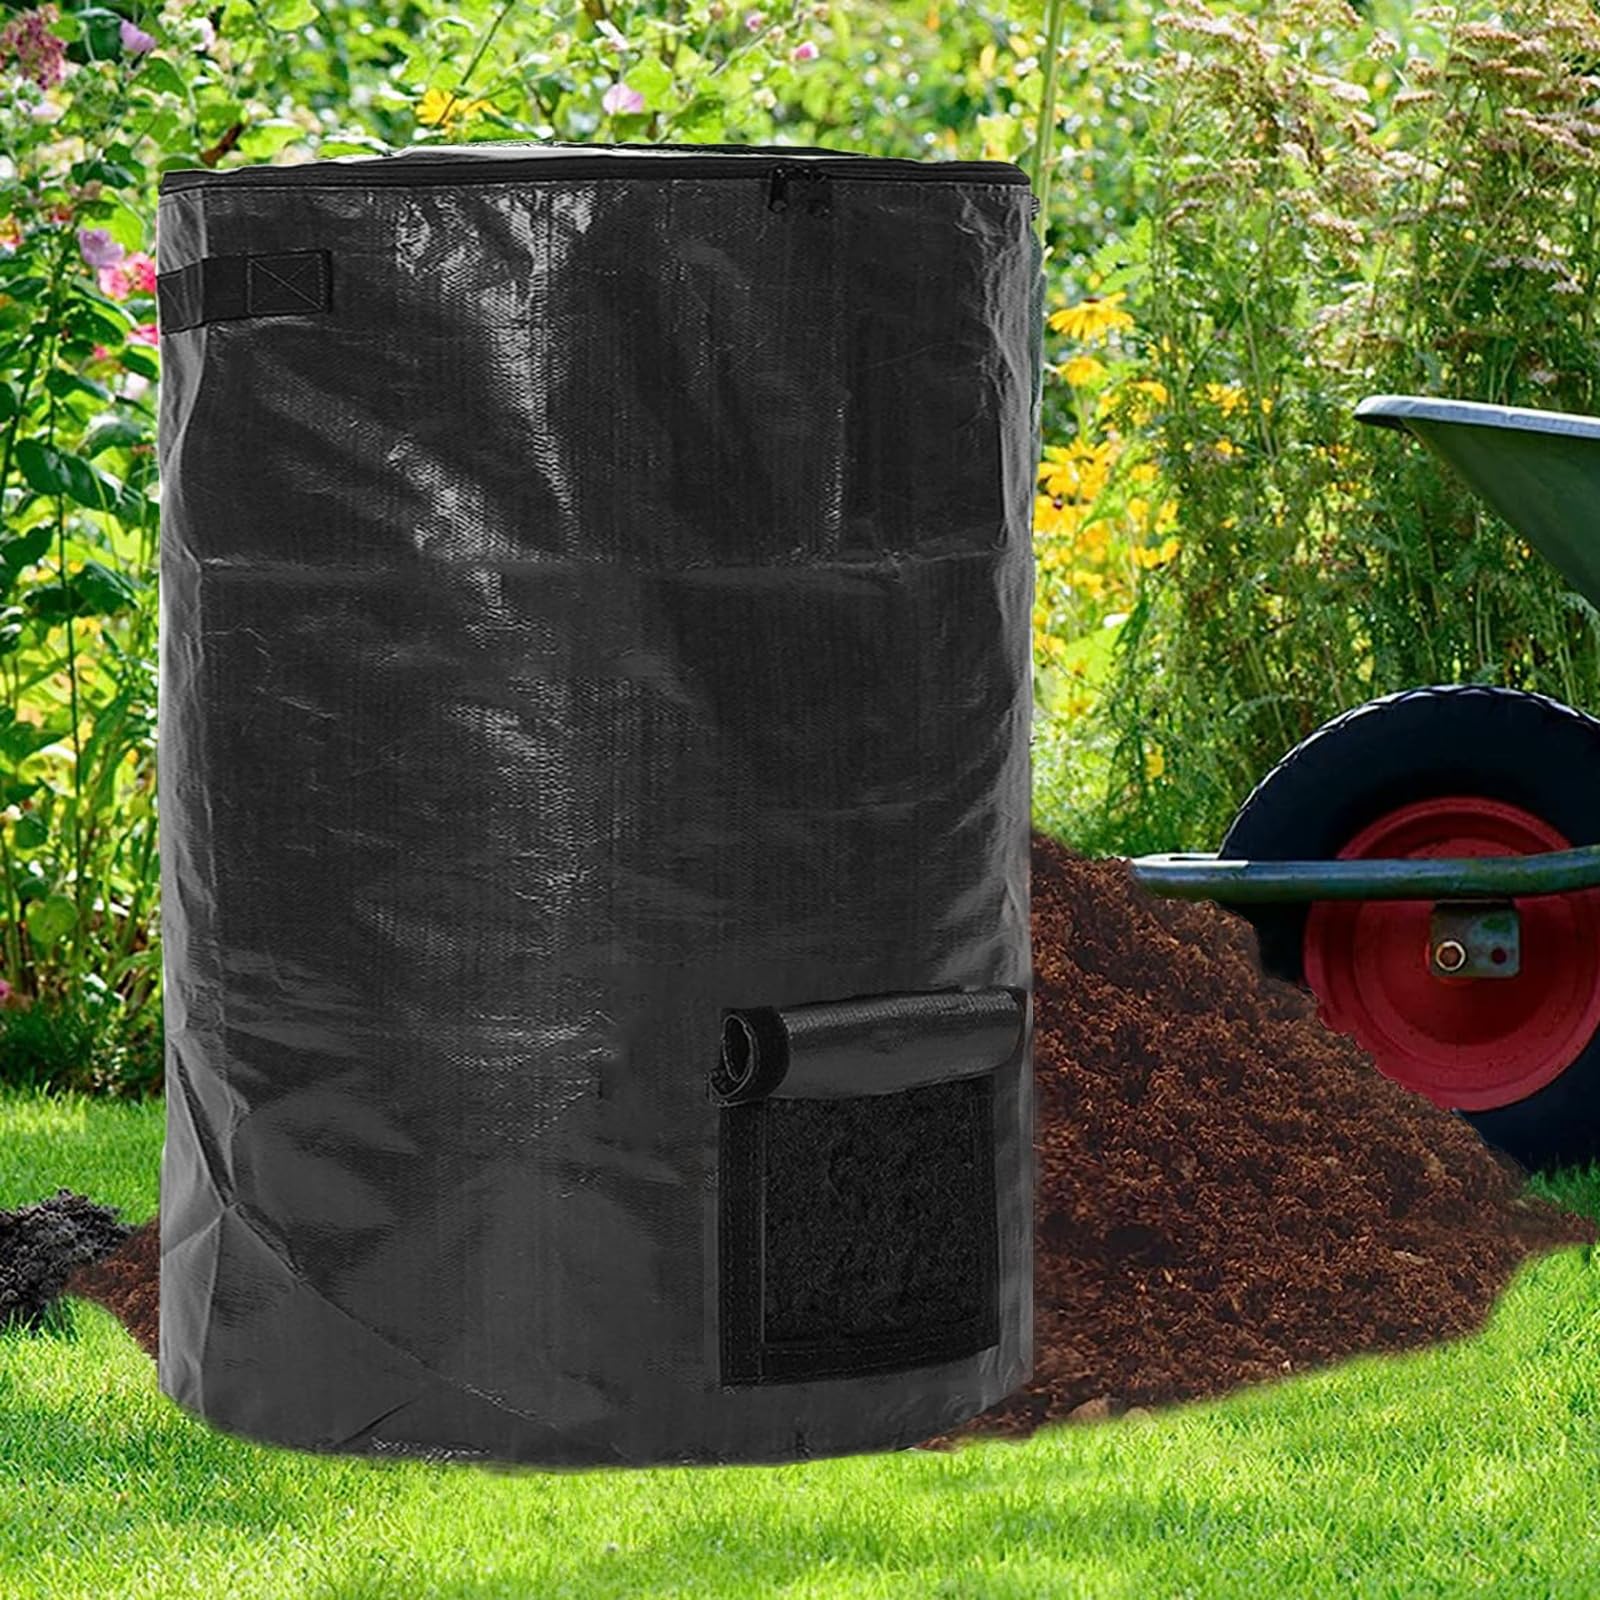 Large Capacity Compost Bin Bags